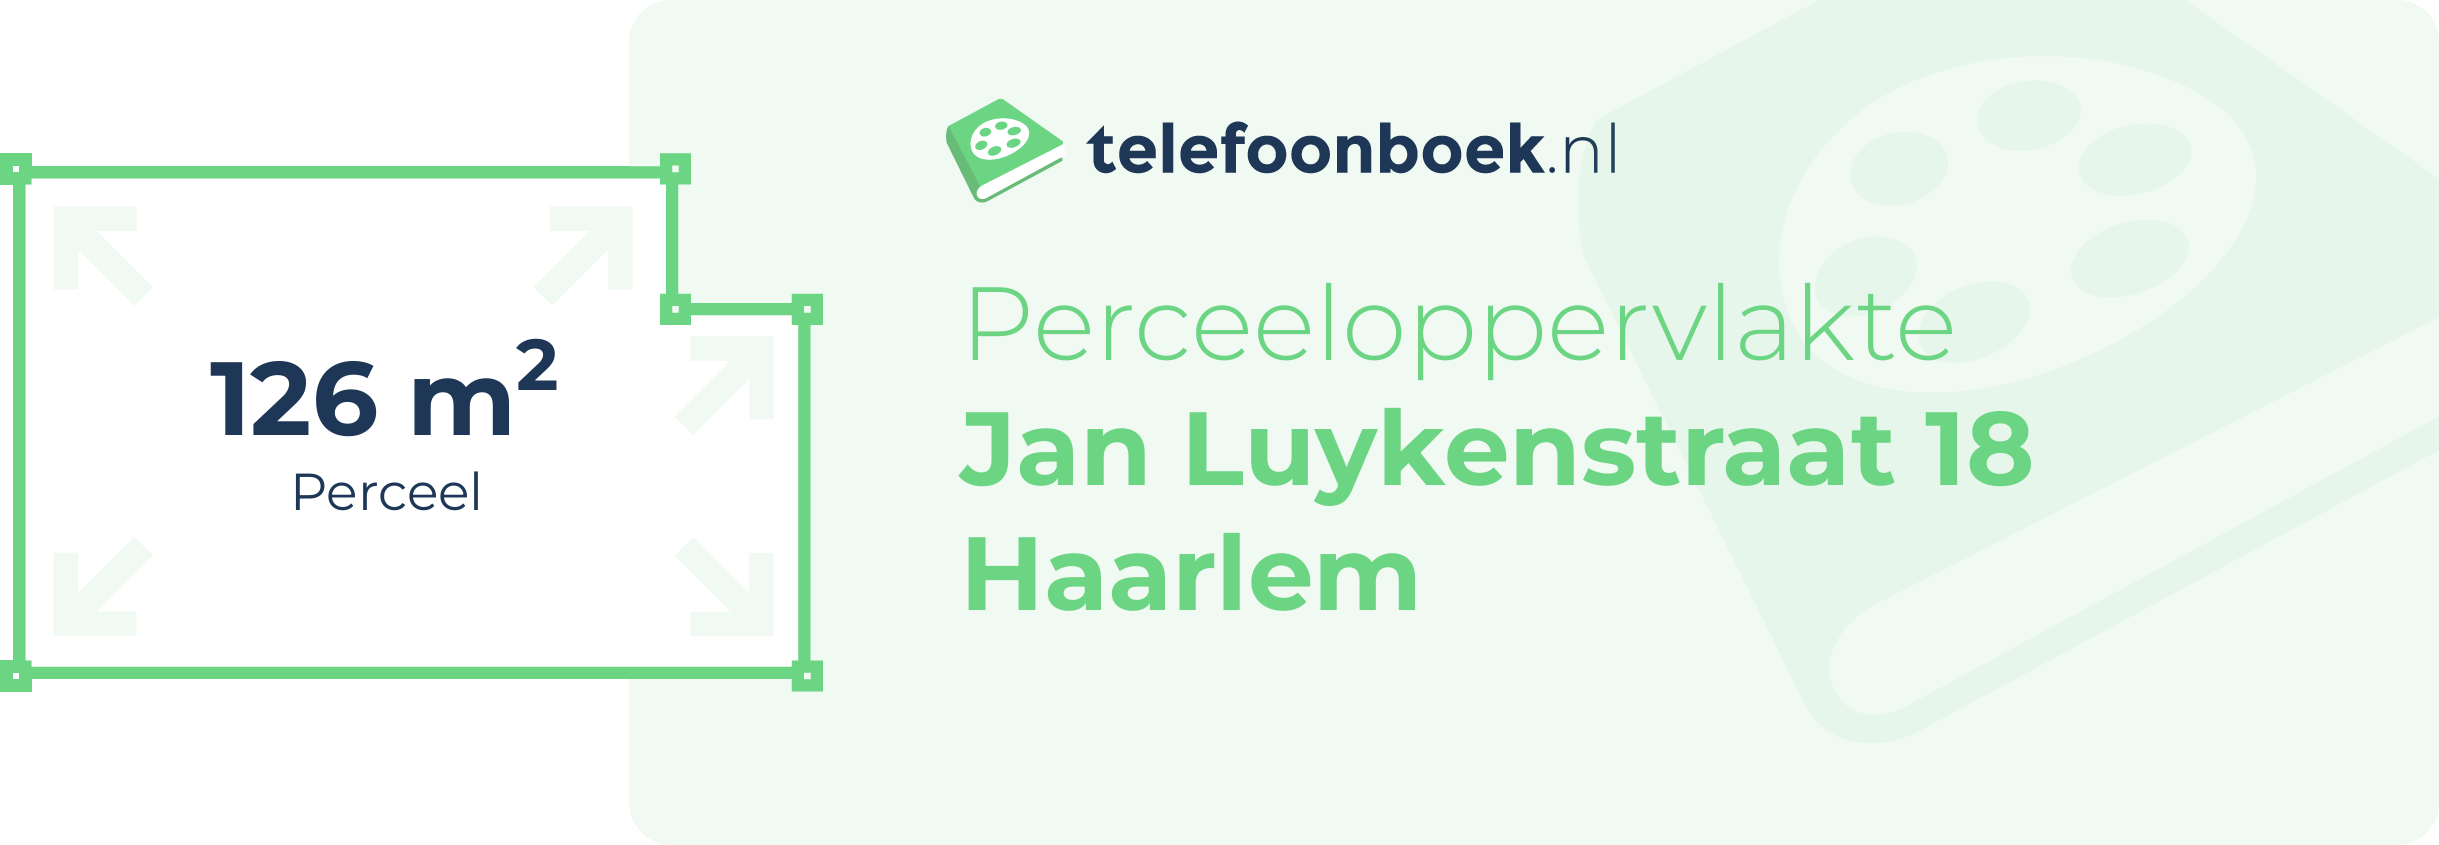 Perceeloppervlakte Jan Luykenstraat 18 Haarlem